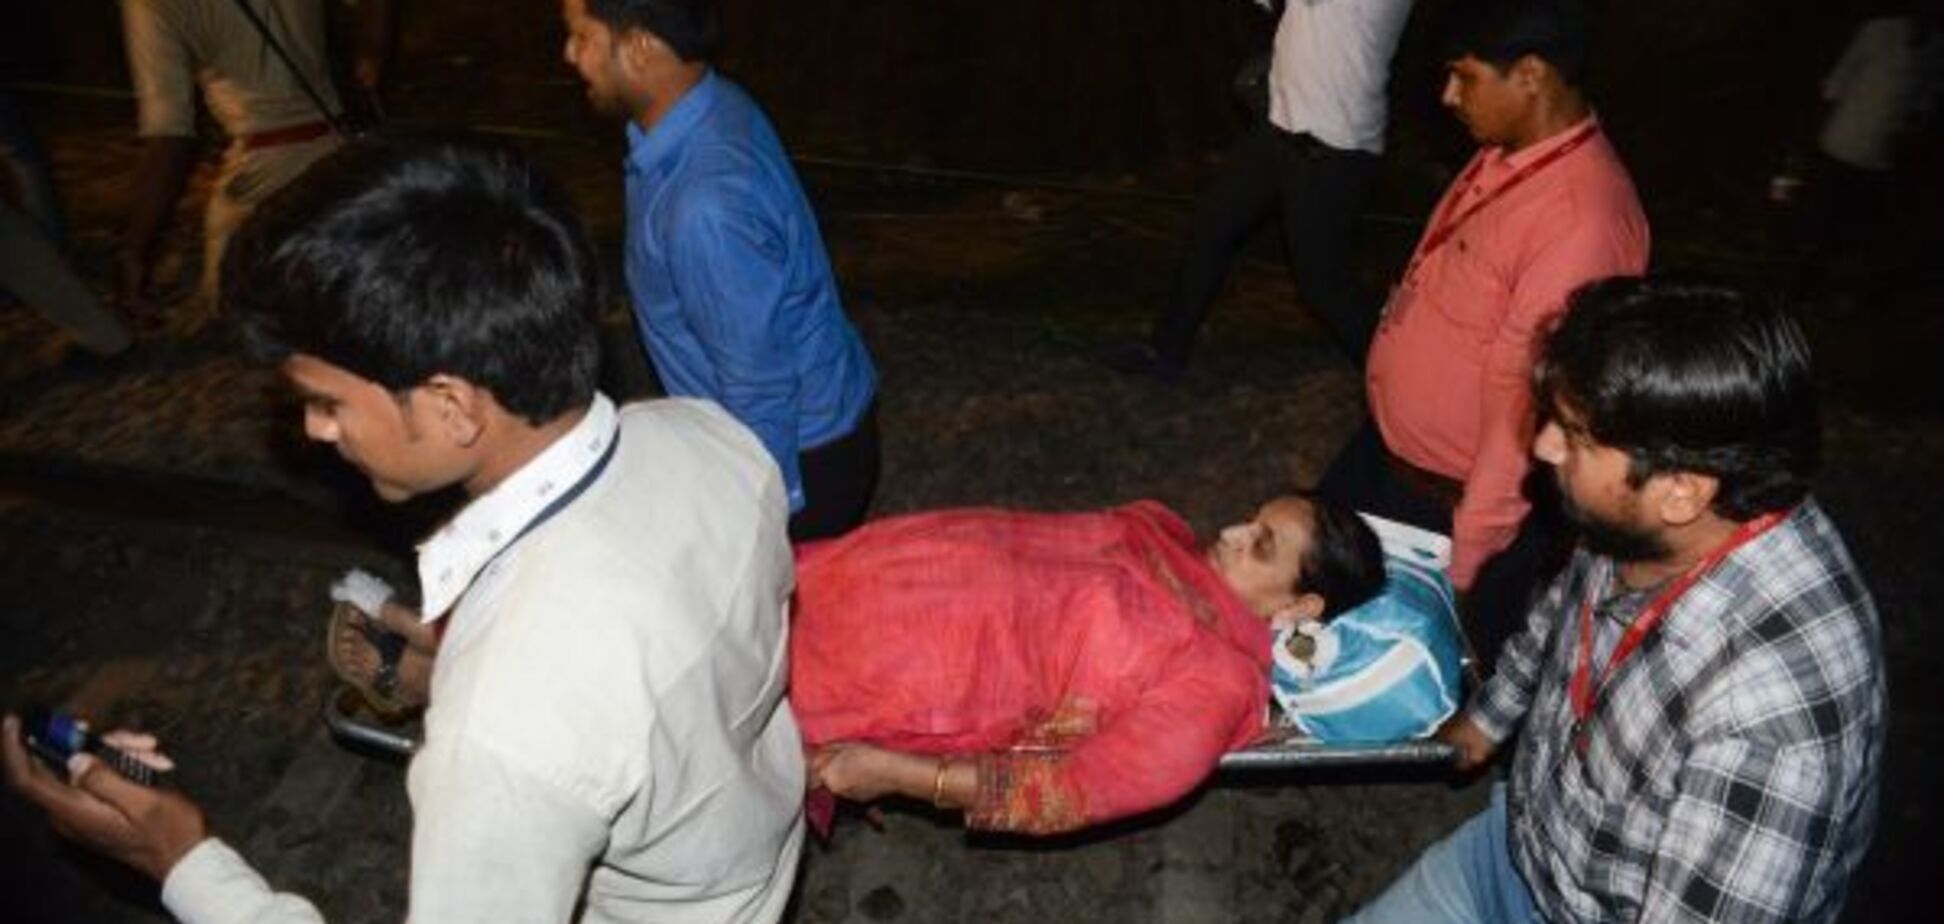  В Индии случилось масштабное ЧП с поездом: 15 пострадавших. Фото и видео с места событий